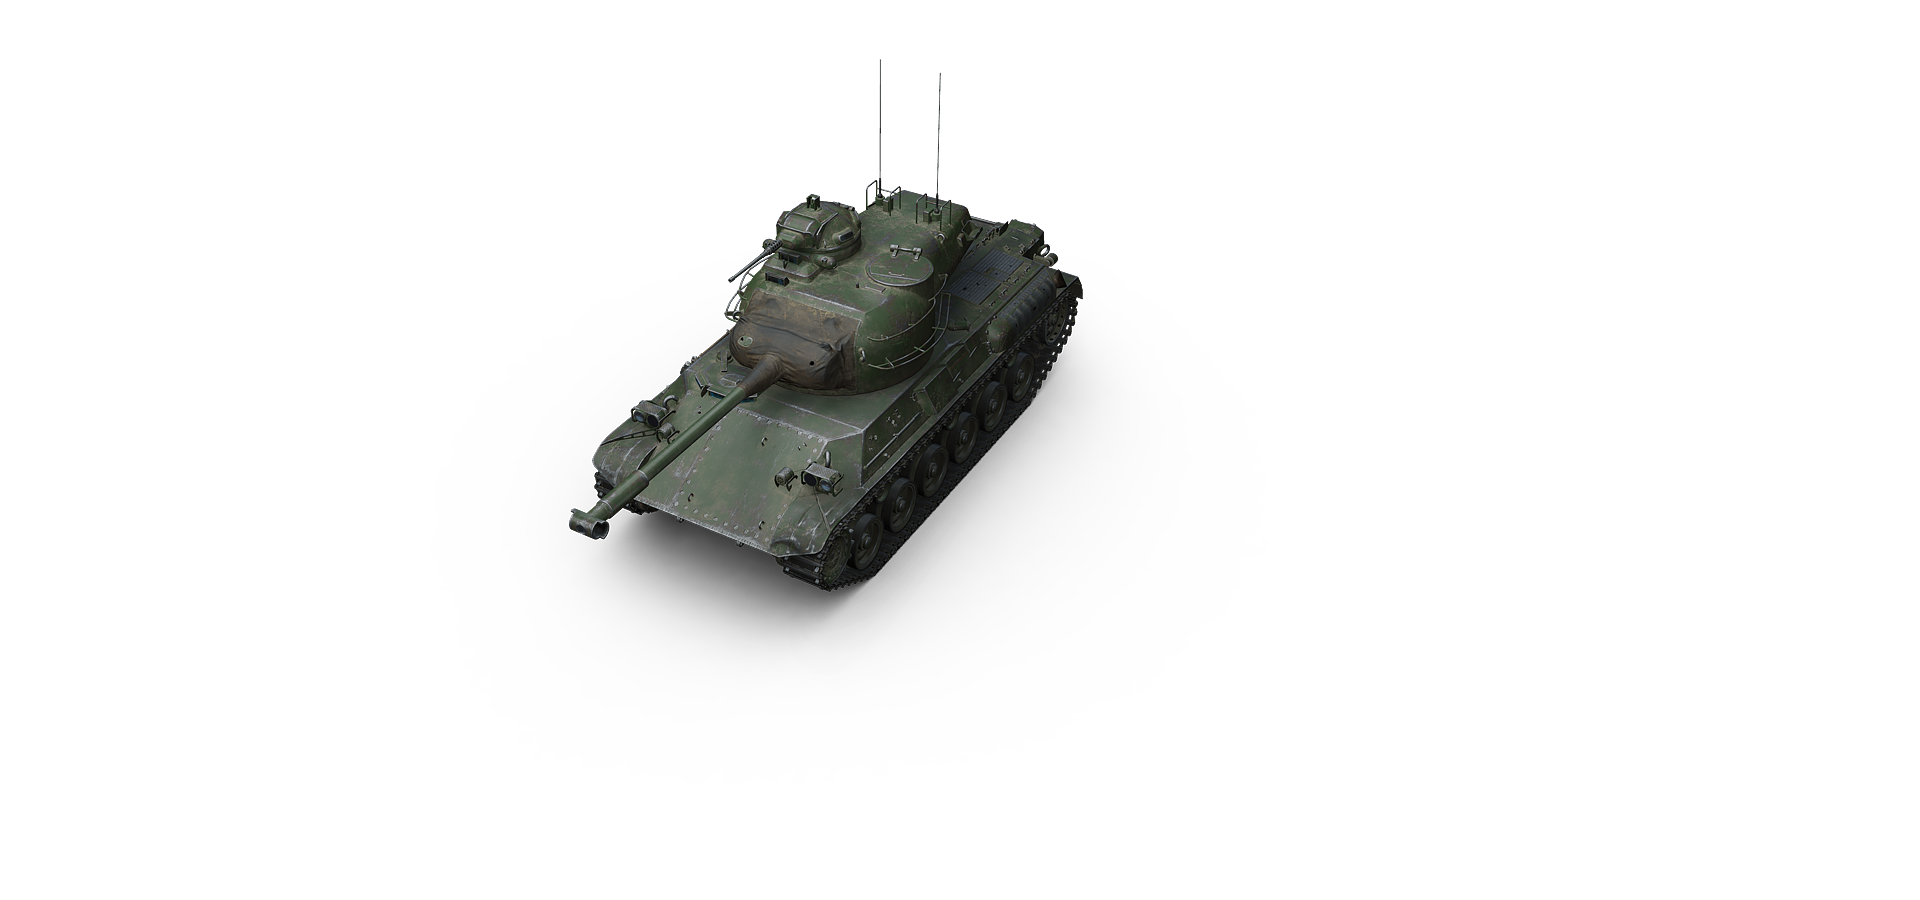 1954 1961. Medium 1 танк WOT. Облегченная броня на танке. M8 танк США.